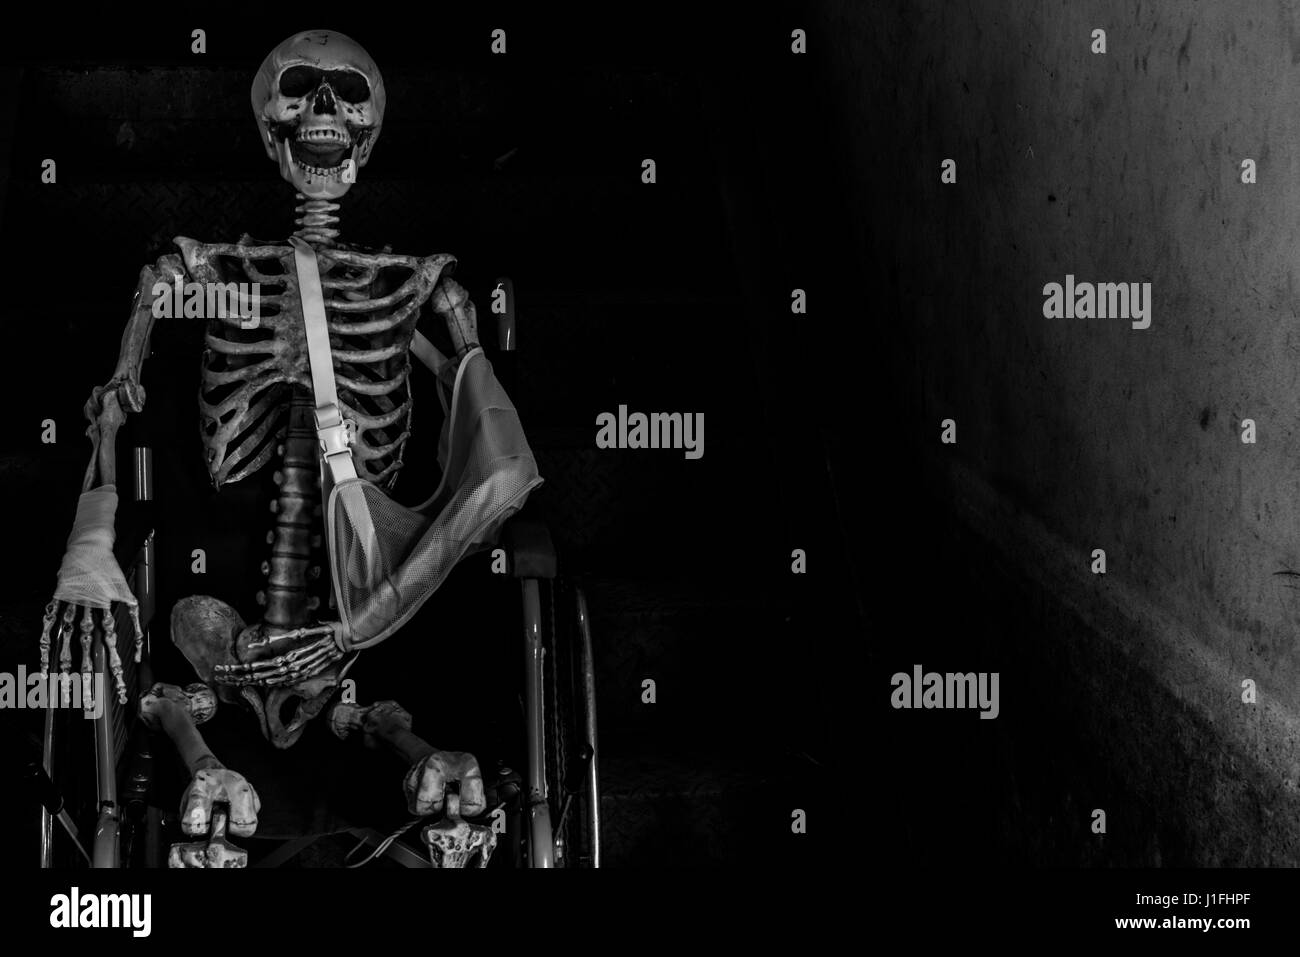 Abbandonato edificio ospedaliero ghost living place con scheletro umano seduto nella sedia a rotelle e tenebre horror e halloween concetto di sfondo Foto Stock